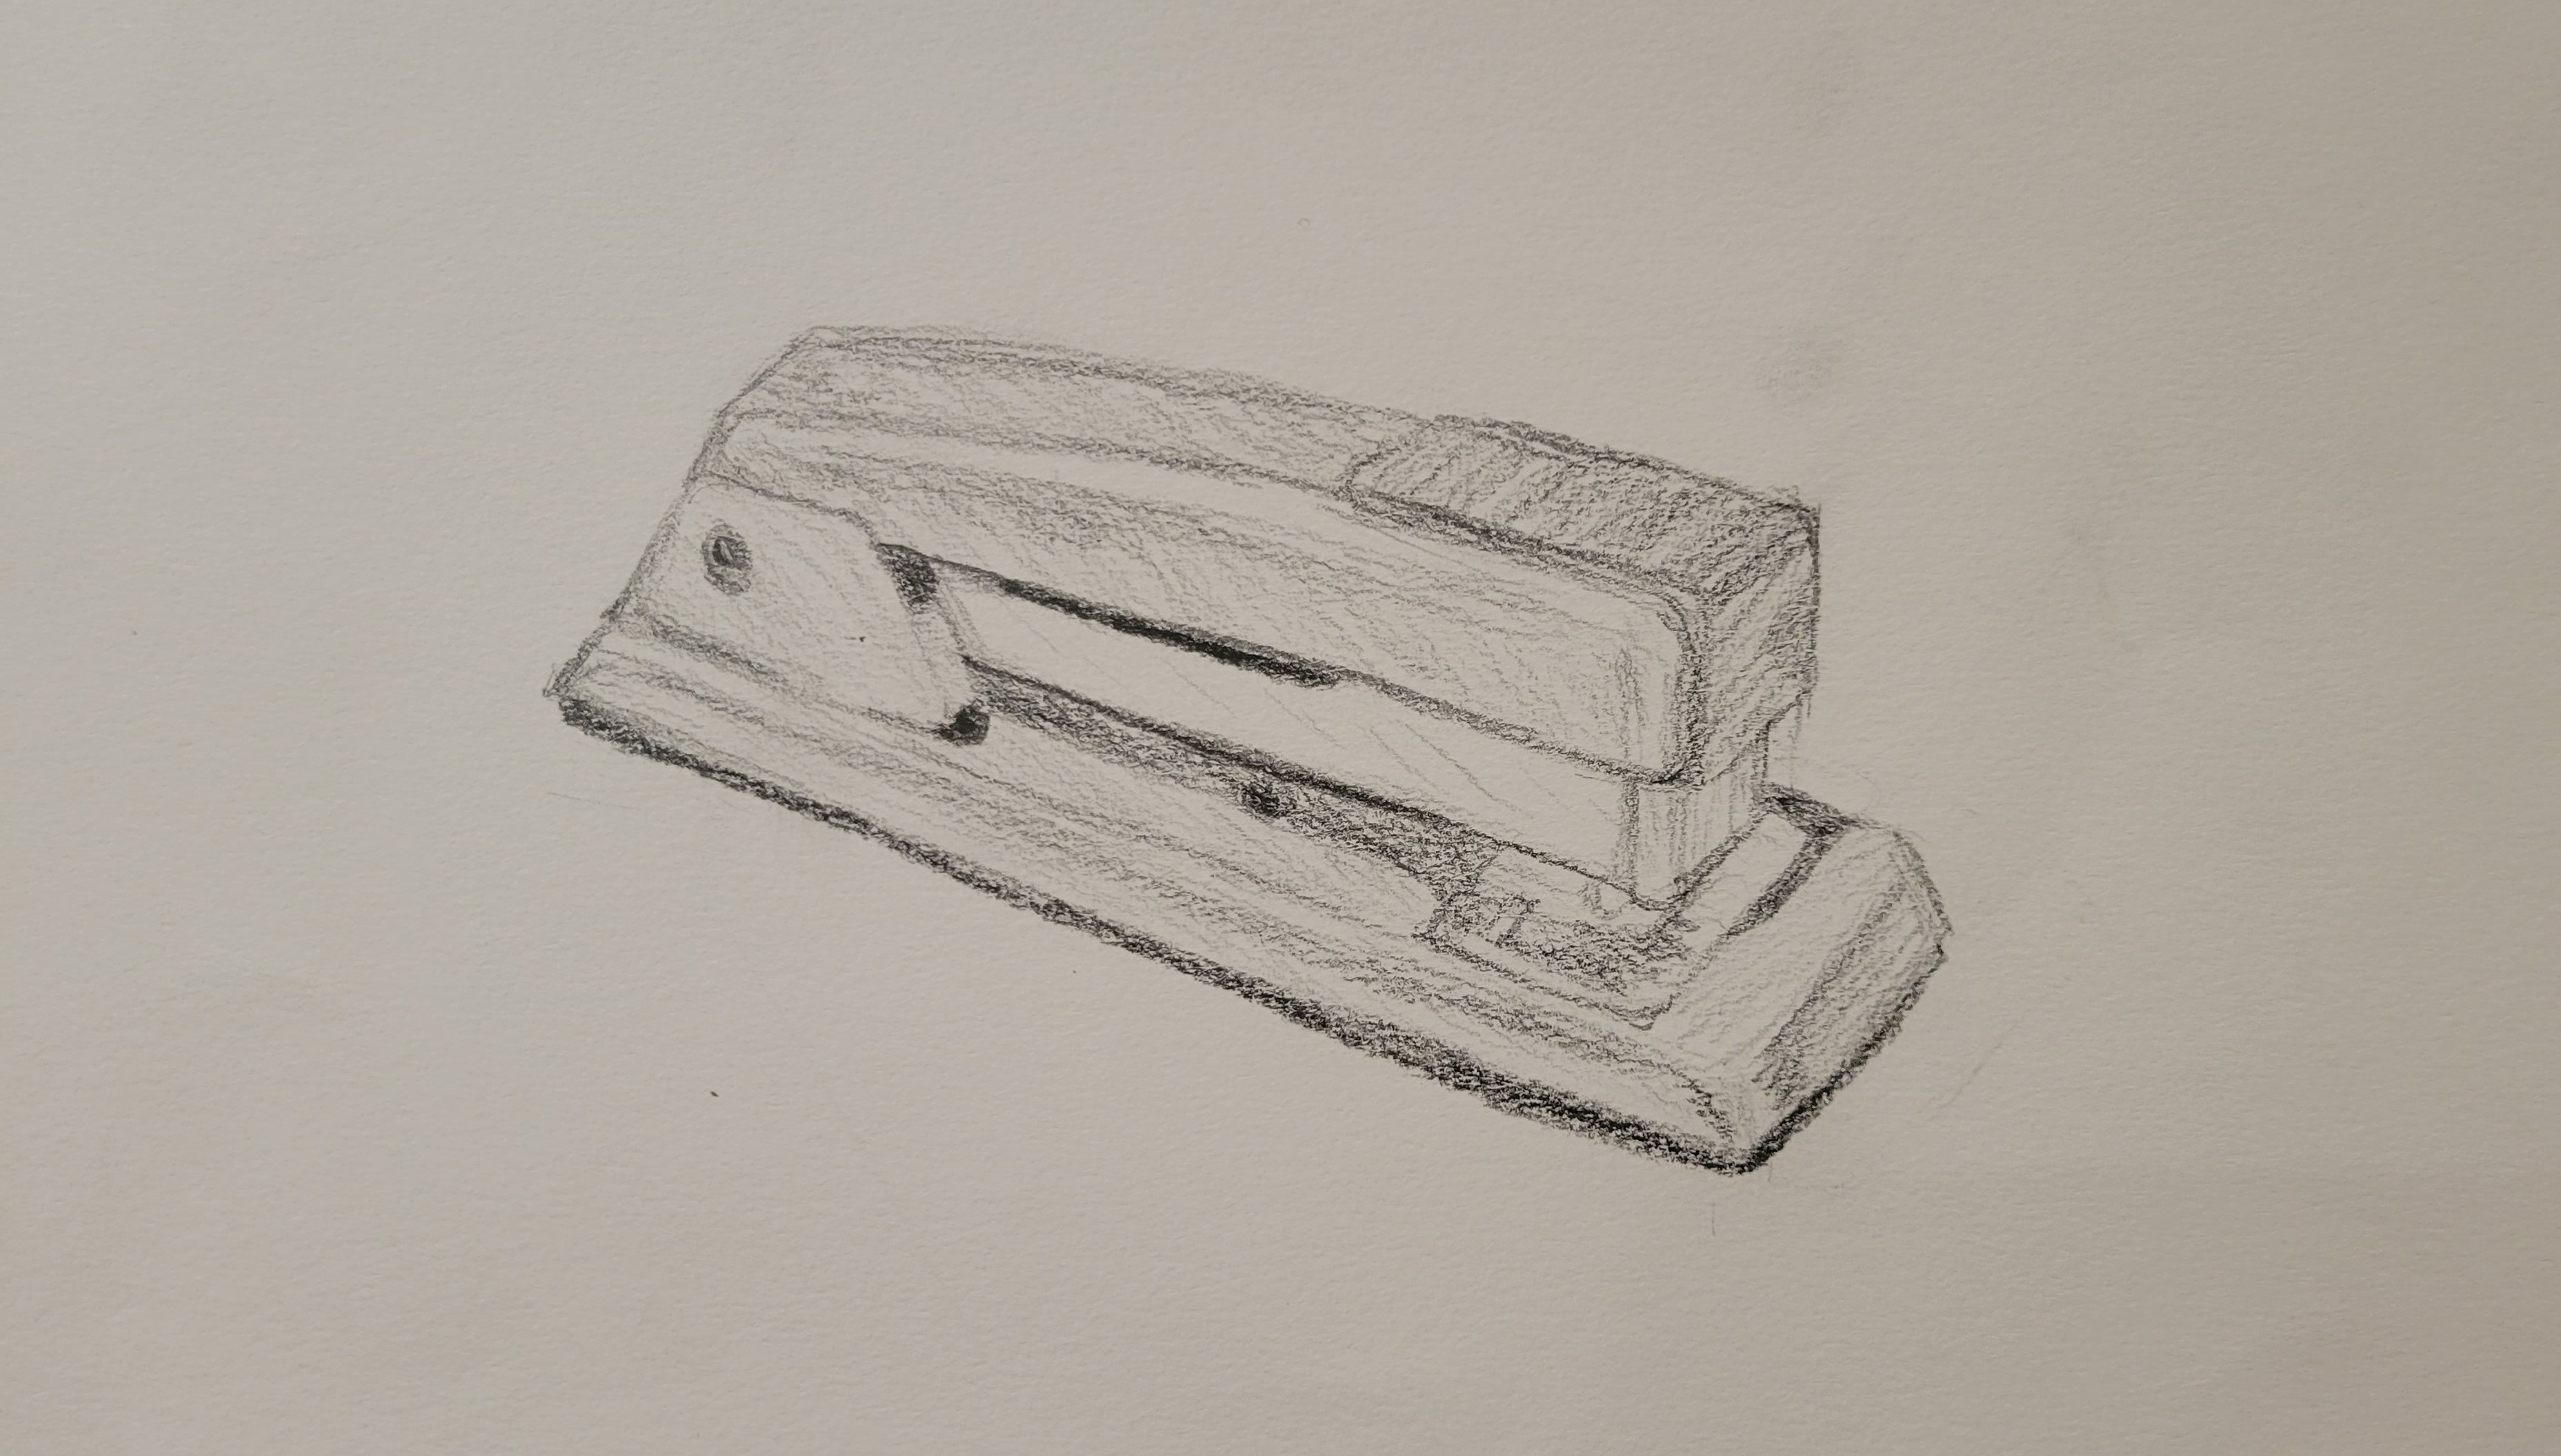 a sketch of a stapler